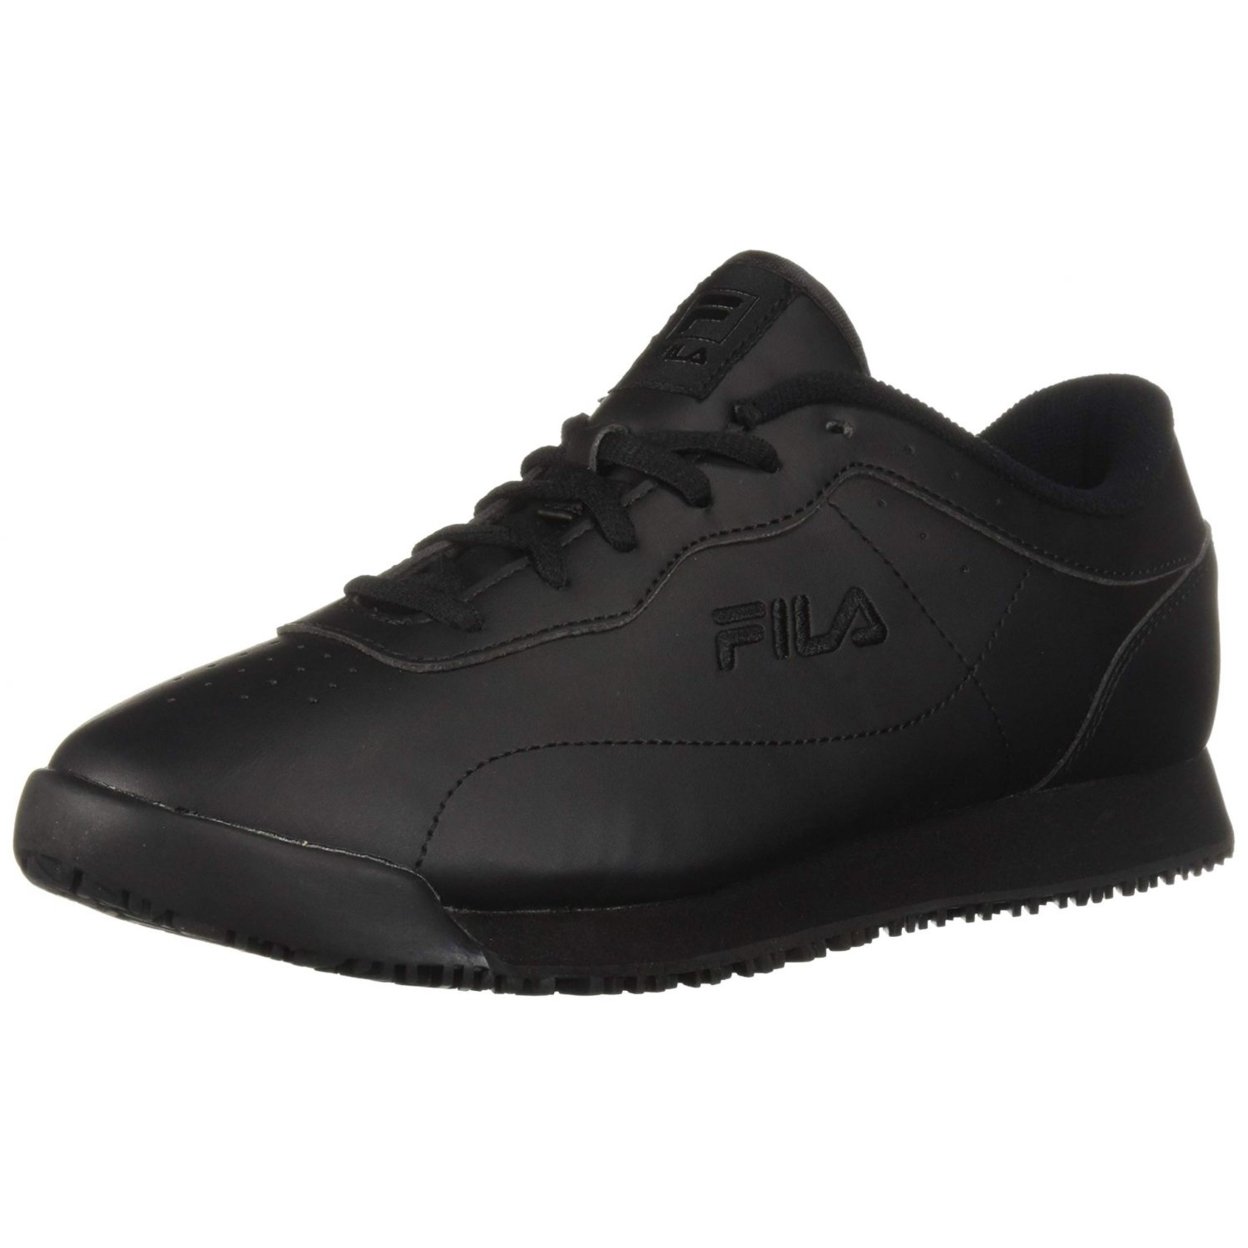 Fila Memory Viable Sr Wide Womens Shoes Size 10, Color: Black 0 BLK/BLK/BLK - Black (black 19-3911tcx), 13.0